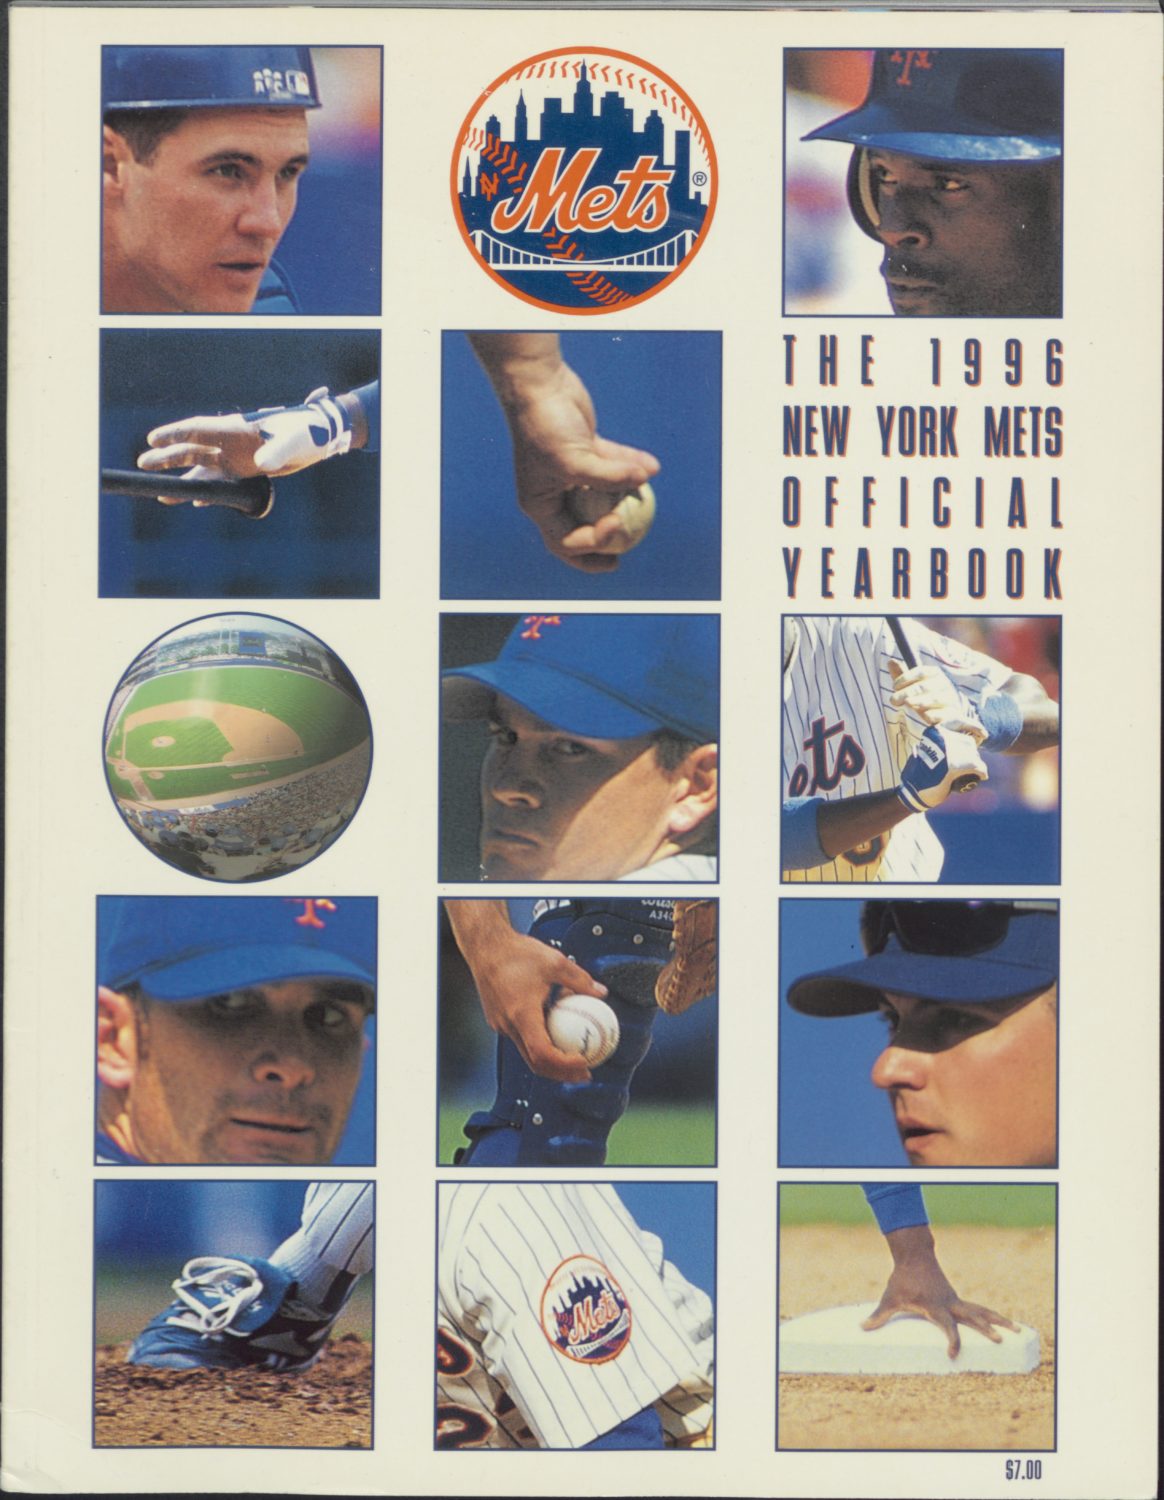 1996 Mets Yearbook